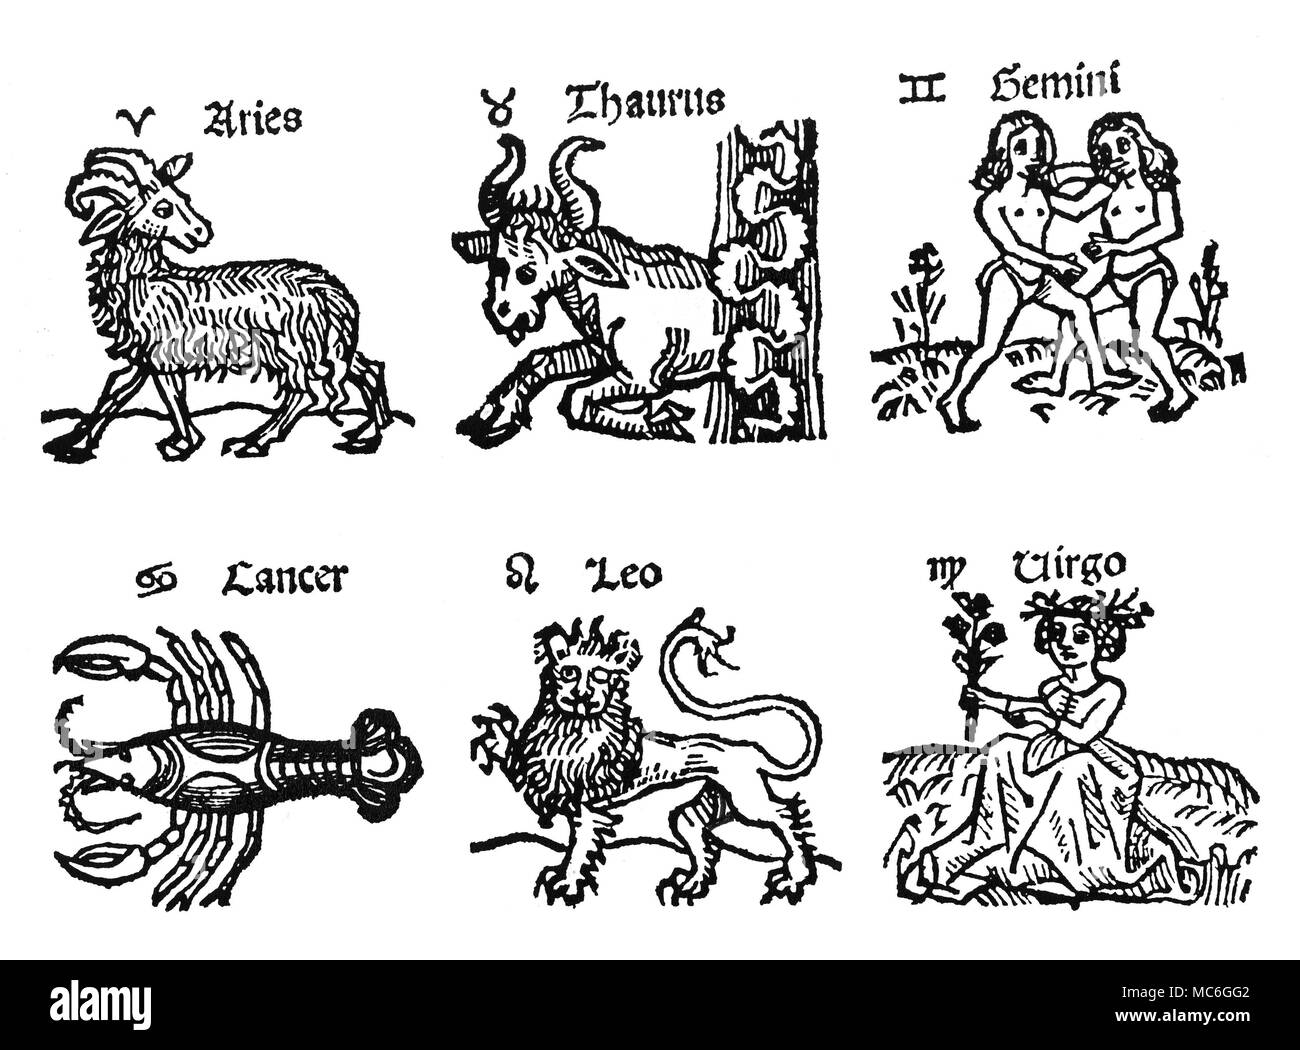 Segni zodiacali i primi sei immagini dei segni zodiacali, con relativi sigil e nome. Da sinistra a destra: Ariete, Toro, Gemelli, Cancro, Leone e Vergine. Inizio del XVI secolo. Foto Stock